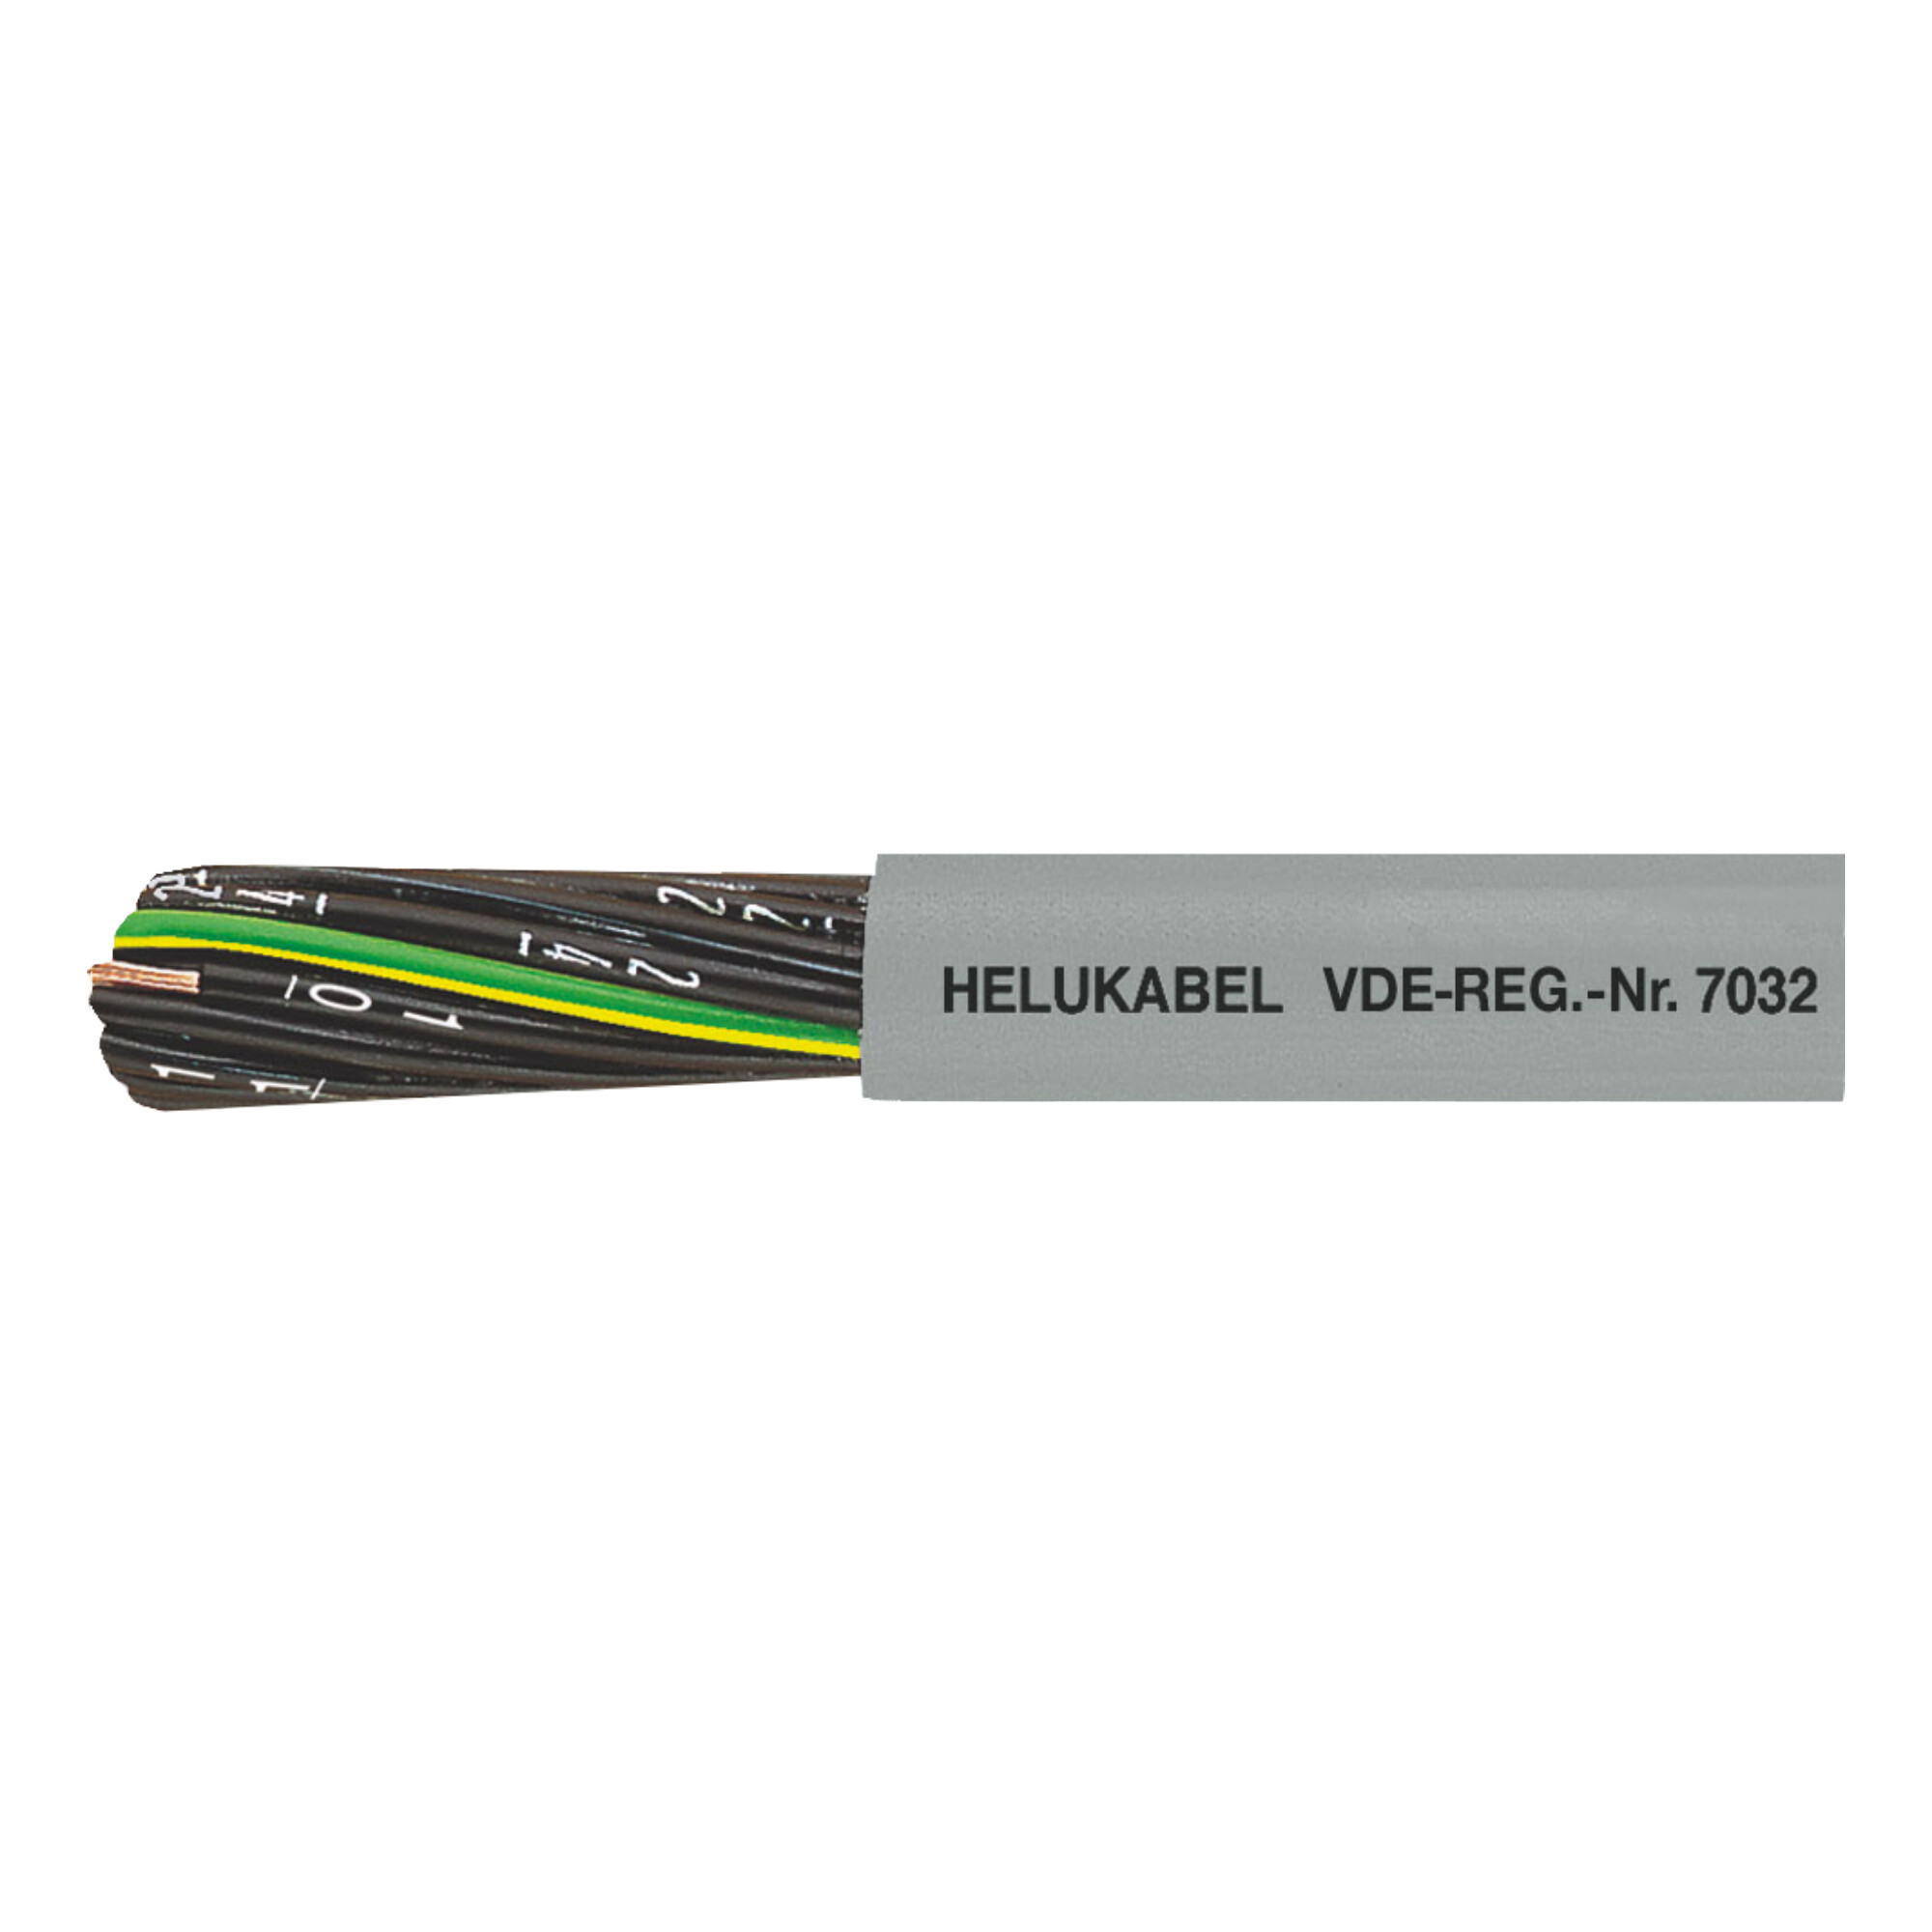 30-10002H0500 JZ-500 PVC buitenmantel en genummerde aders, incl. groen-geel.
Zonder groen/gele ader = serie OZ-500